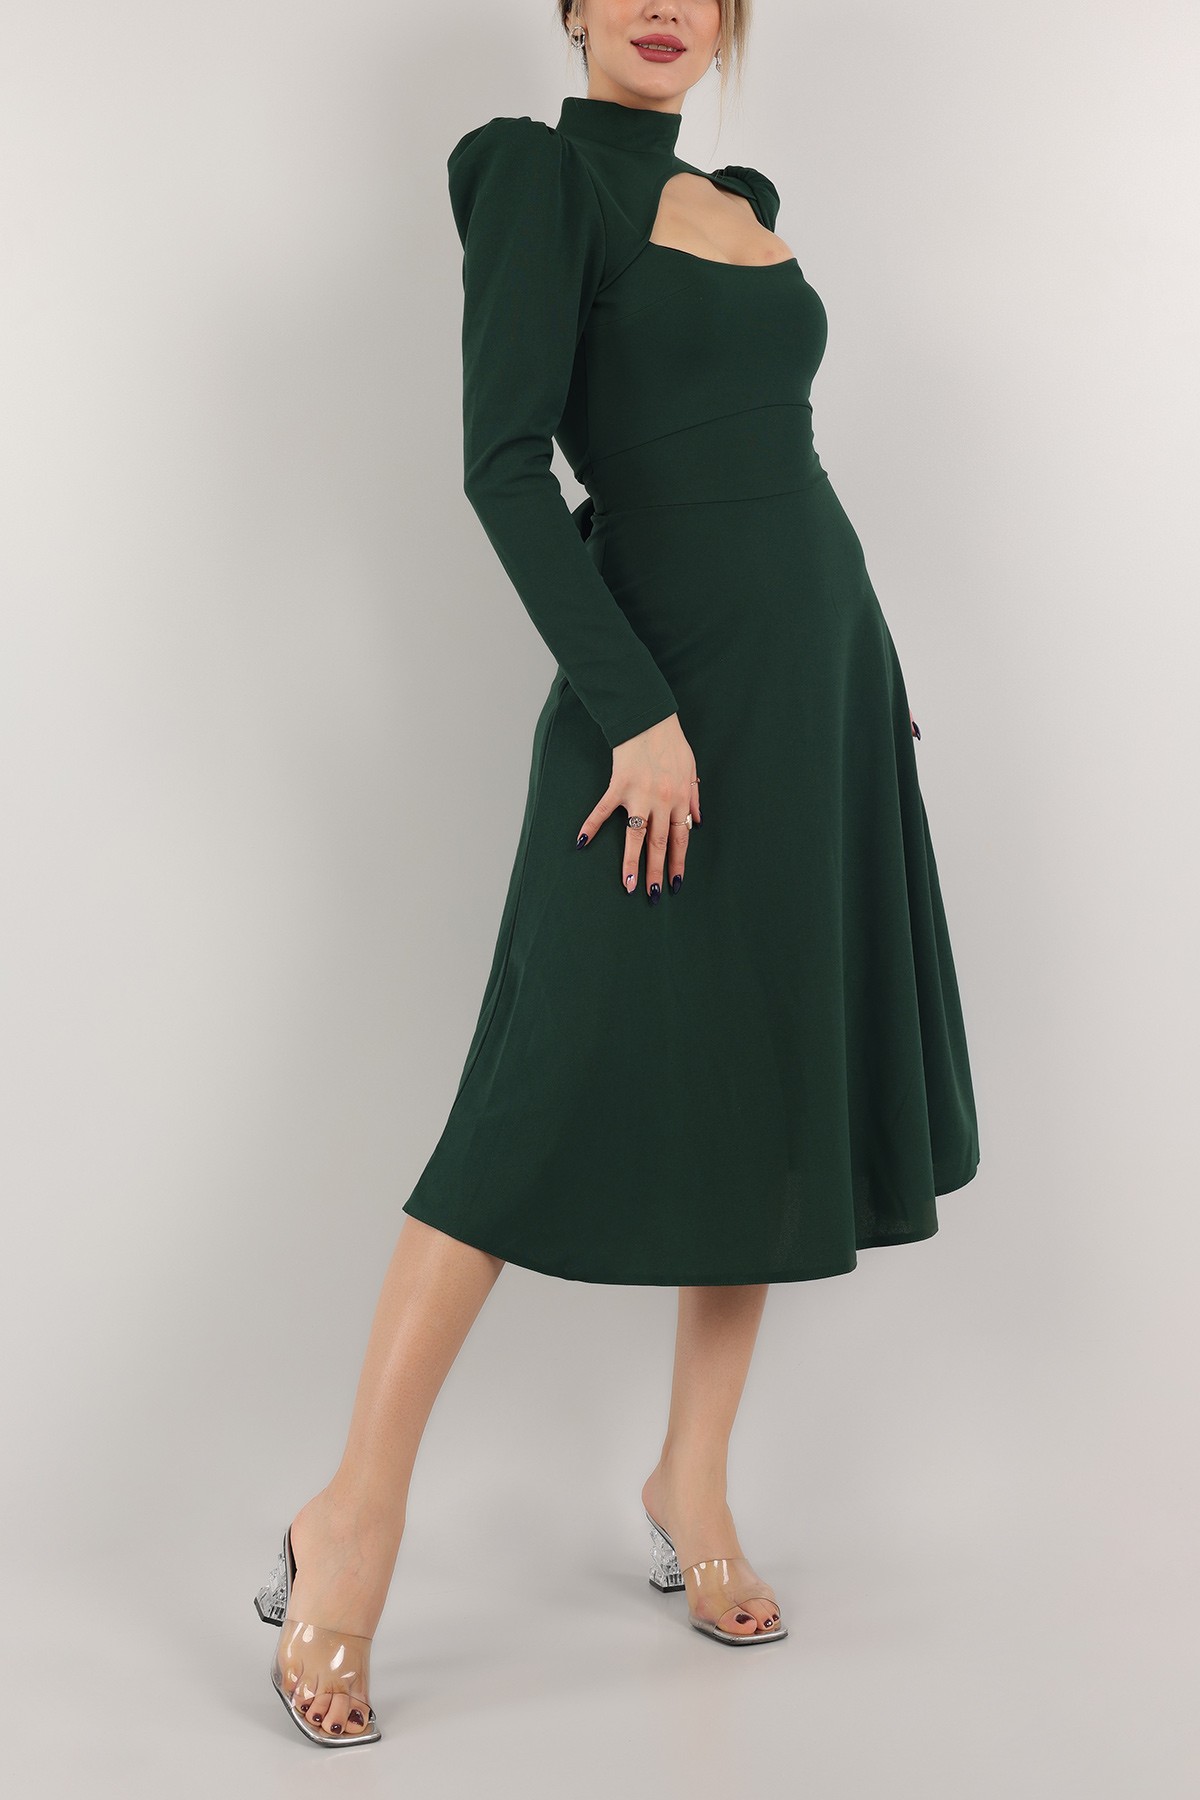 Yeşil Beli Bağlamalı Elbise 154123